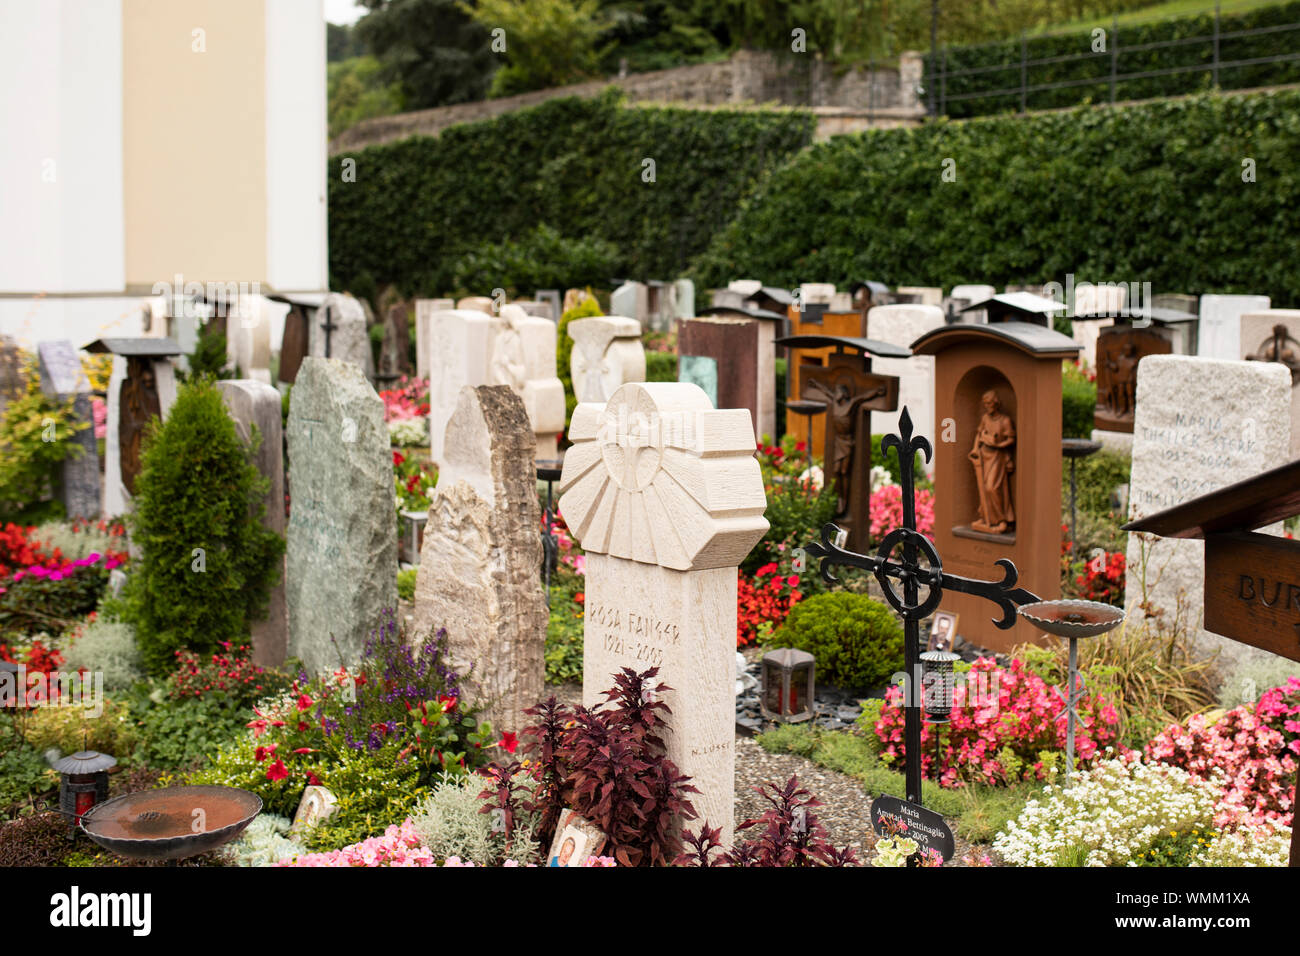 Grabsteine und Blumen auf dem Friedhof der katholischen Kirche St. Peter  und Paul in der Stadt Sarnen im Kanton Obwalden in der Schweiz  Stockfotografie - Alamy